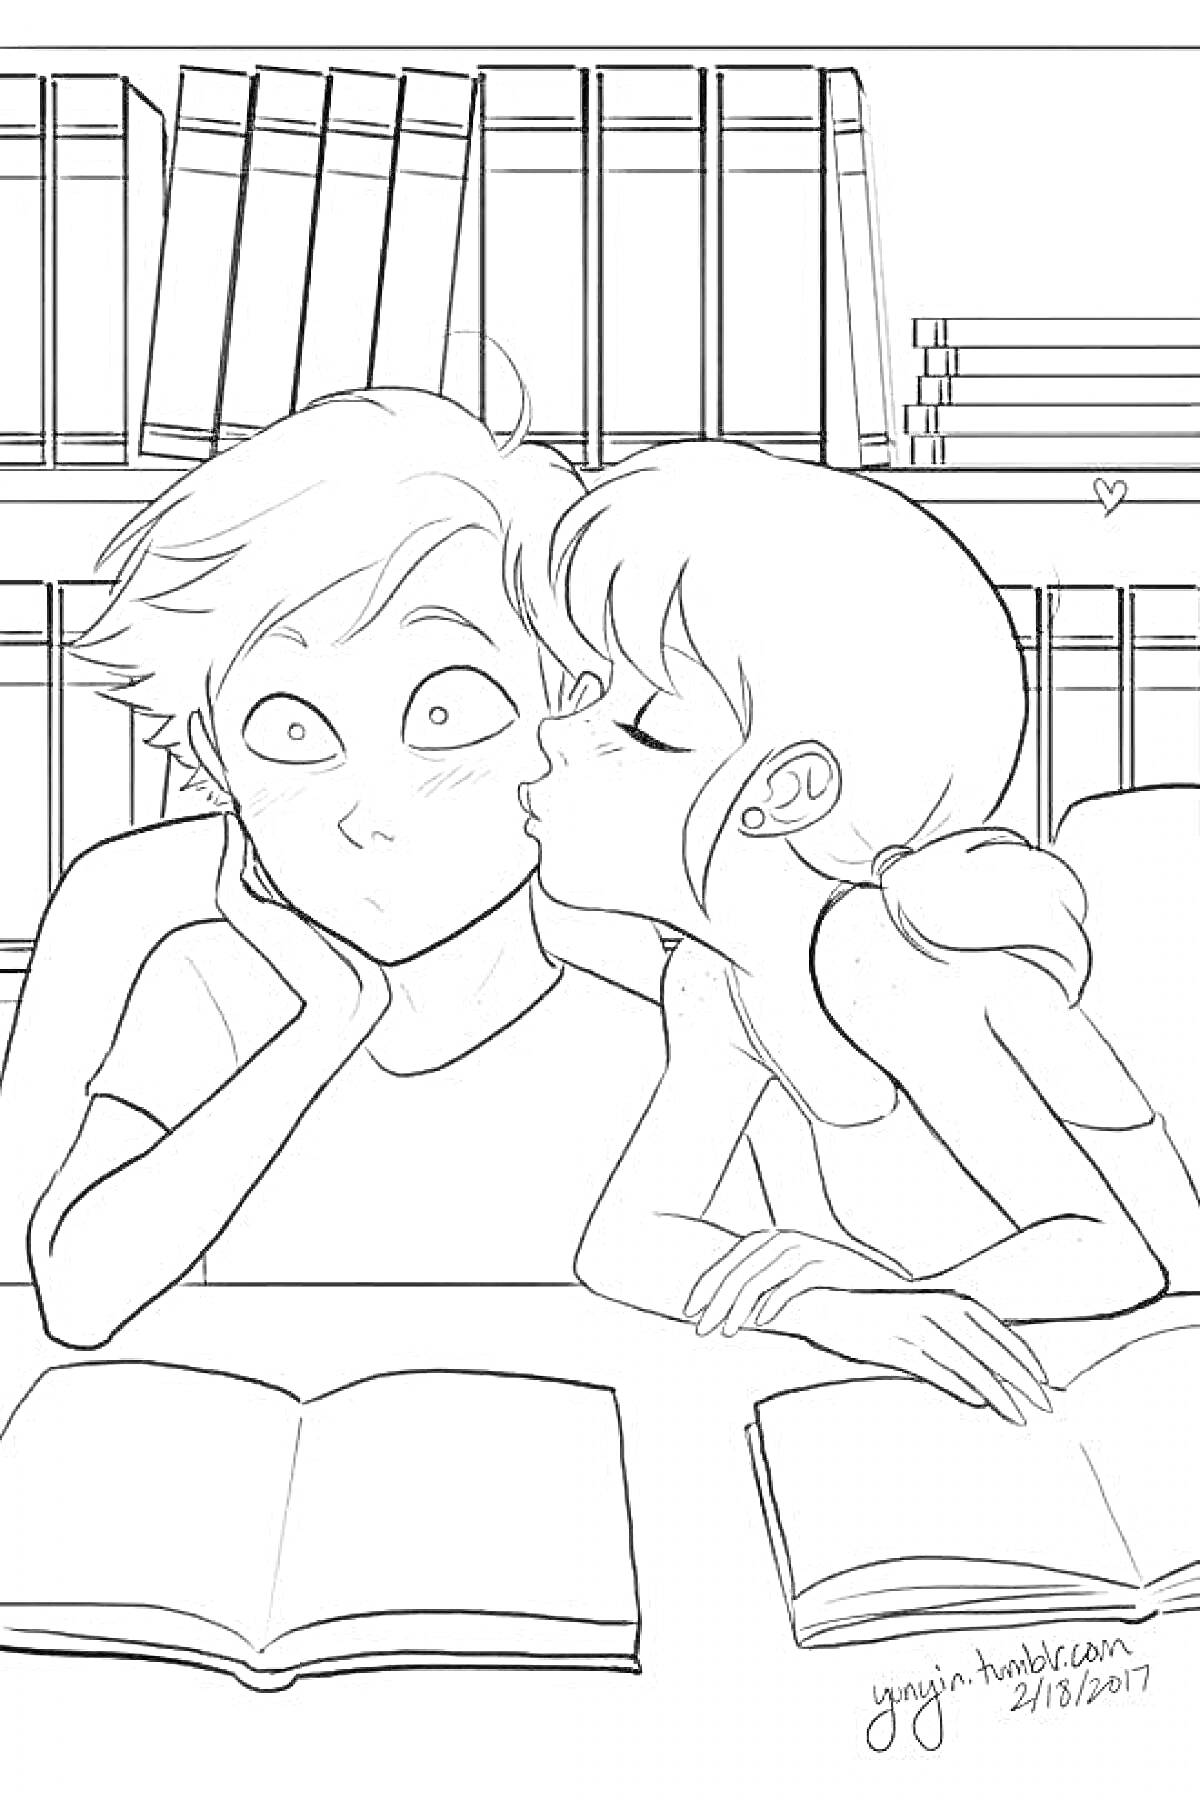 РаскраскаМаринетт целует Эдриана за столом с книгами на фоне книжных полок